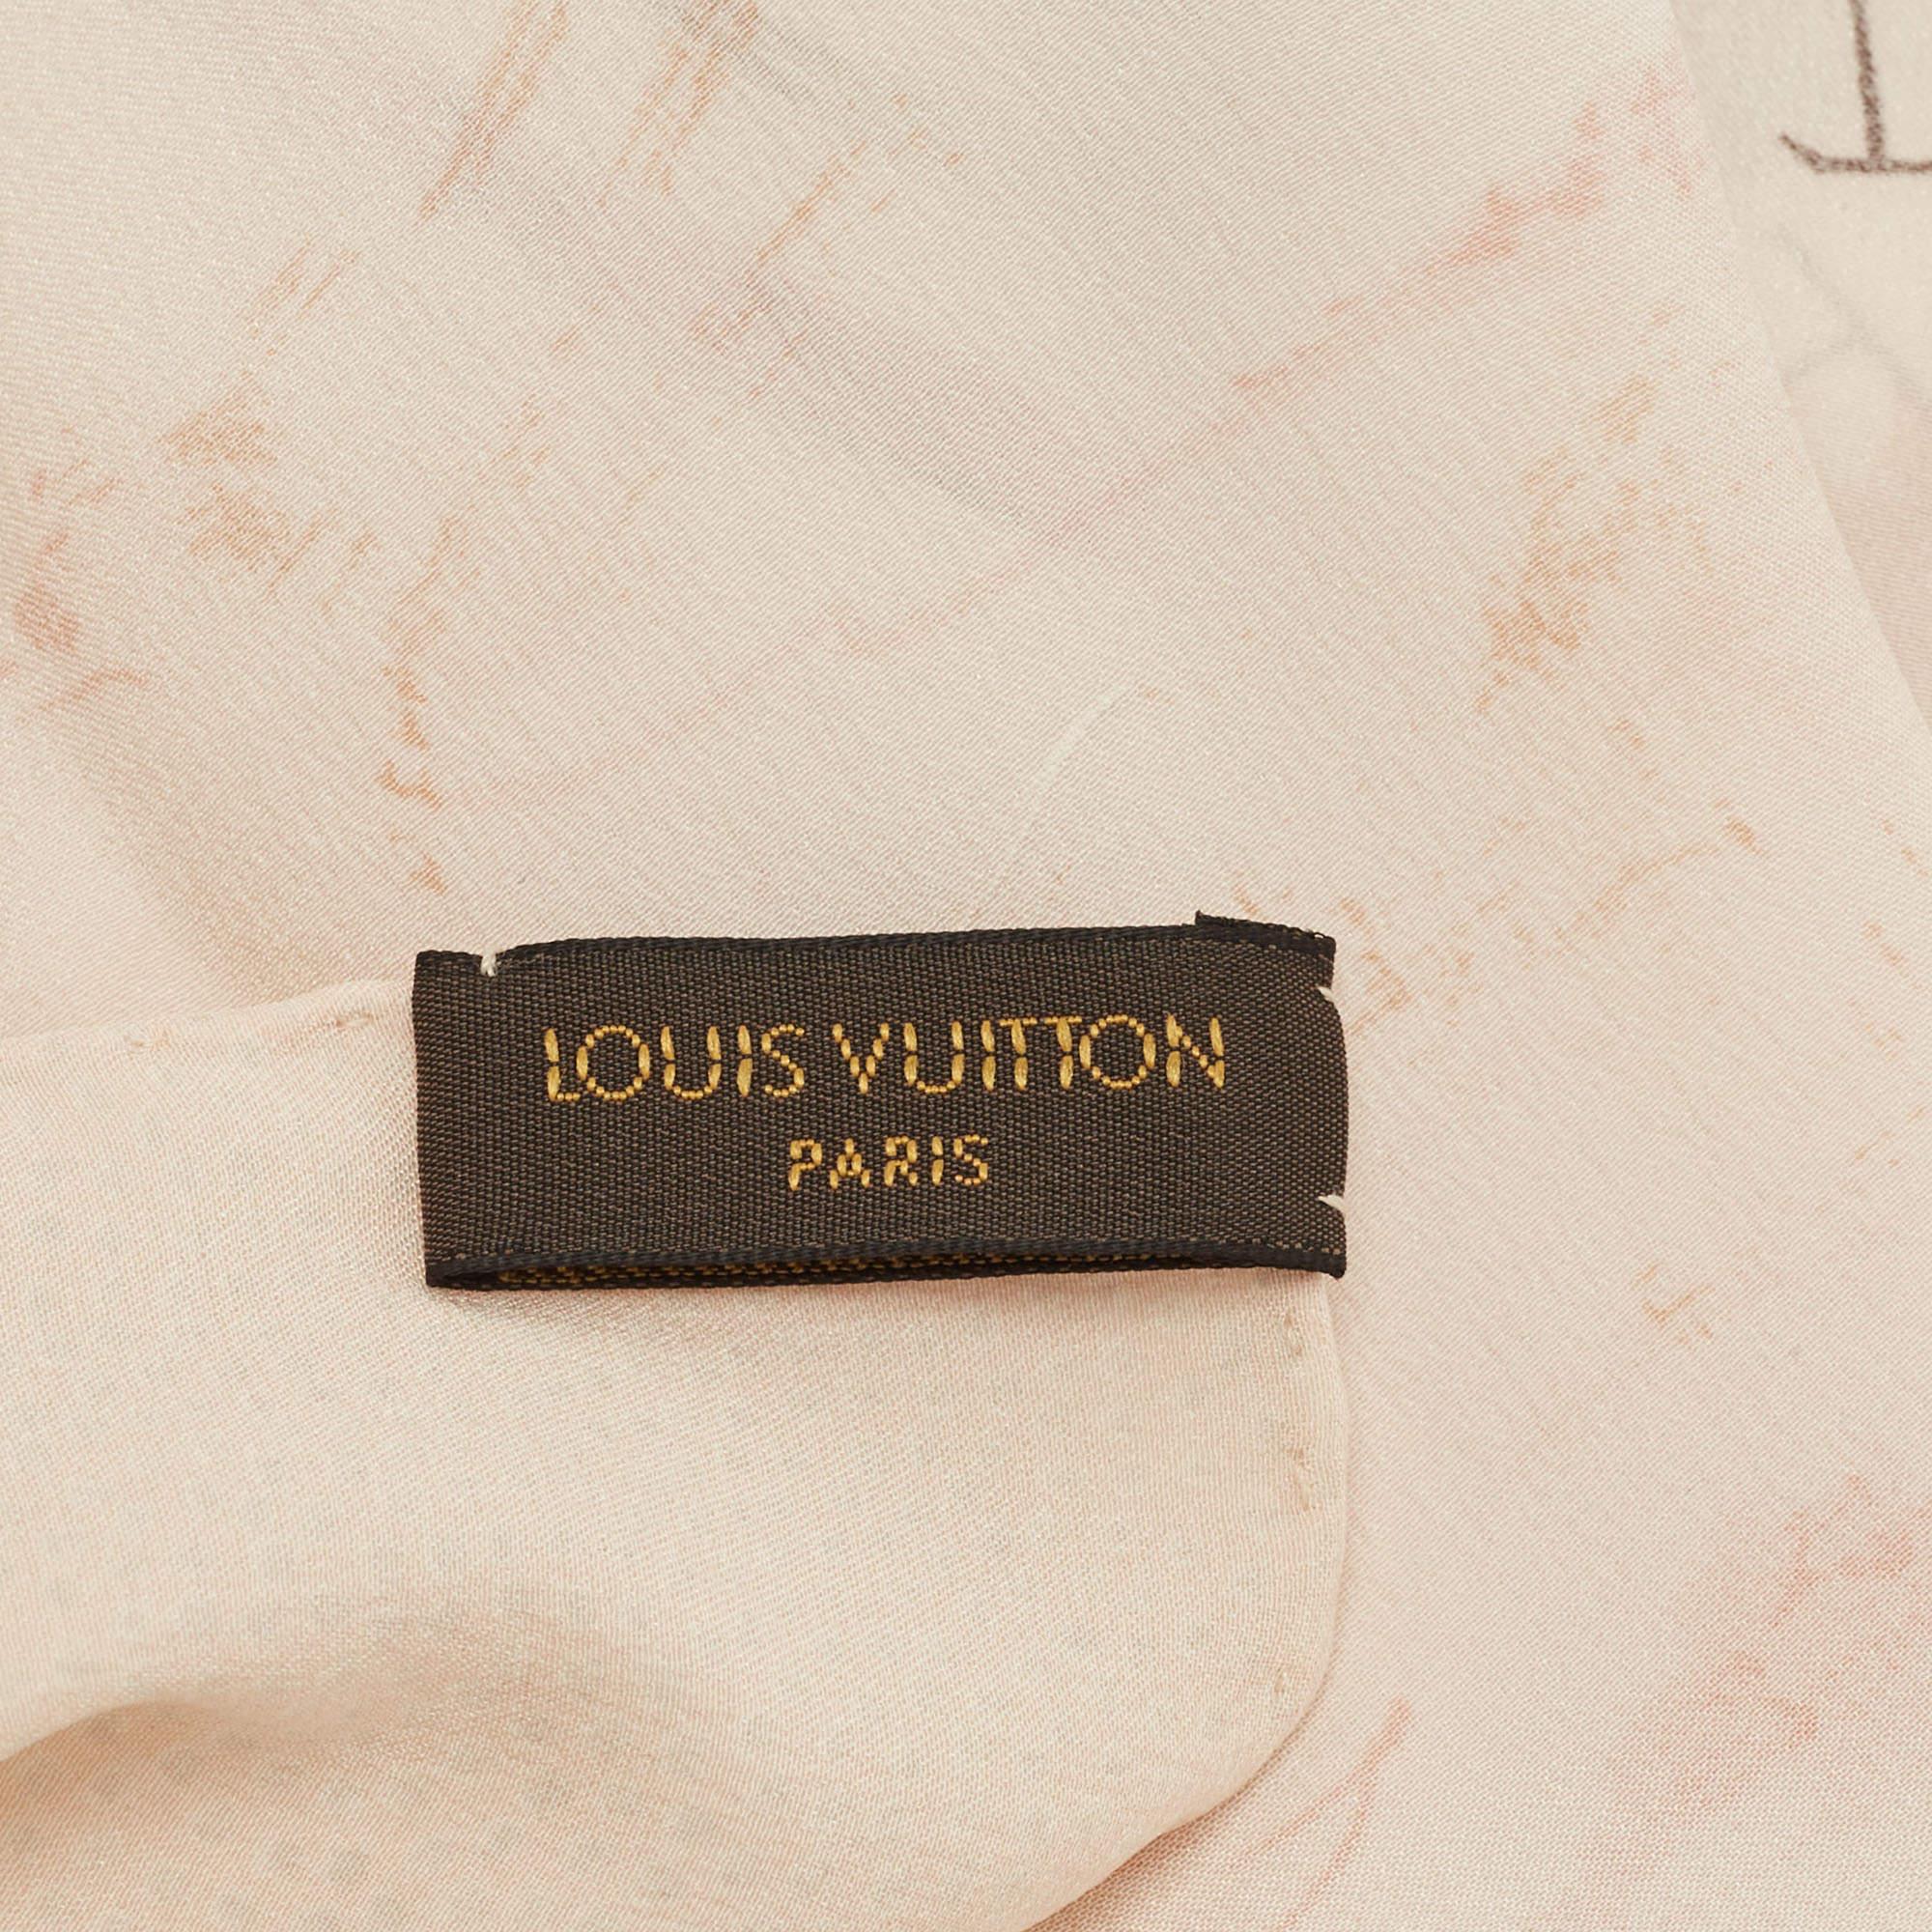 Que ce soit sur une tenue de soirée ou une tenue chic et décontractée, Louis Vuitton apporte un élément de style supplémentaire avec ce superbe foulard. Confectionnée en soie, cette création est rehaussée d'imprimés sur toute sa surface.

